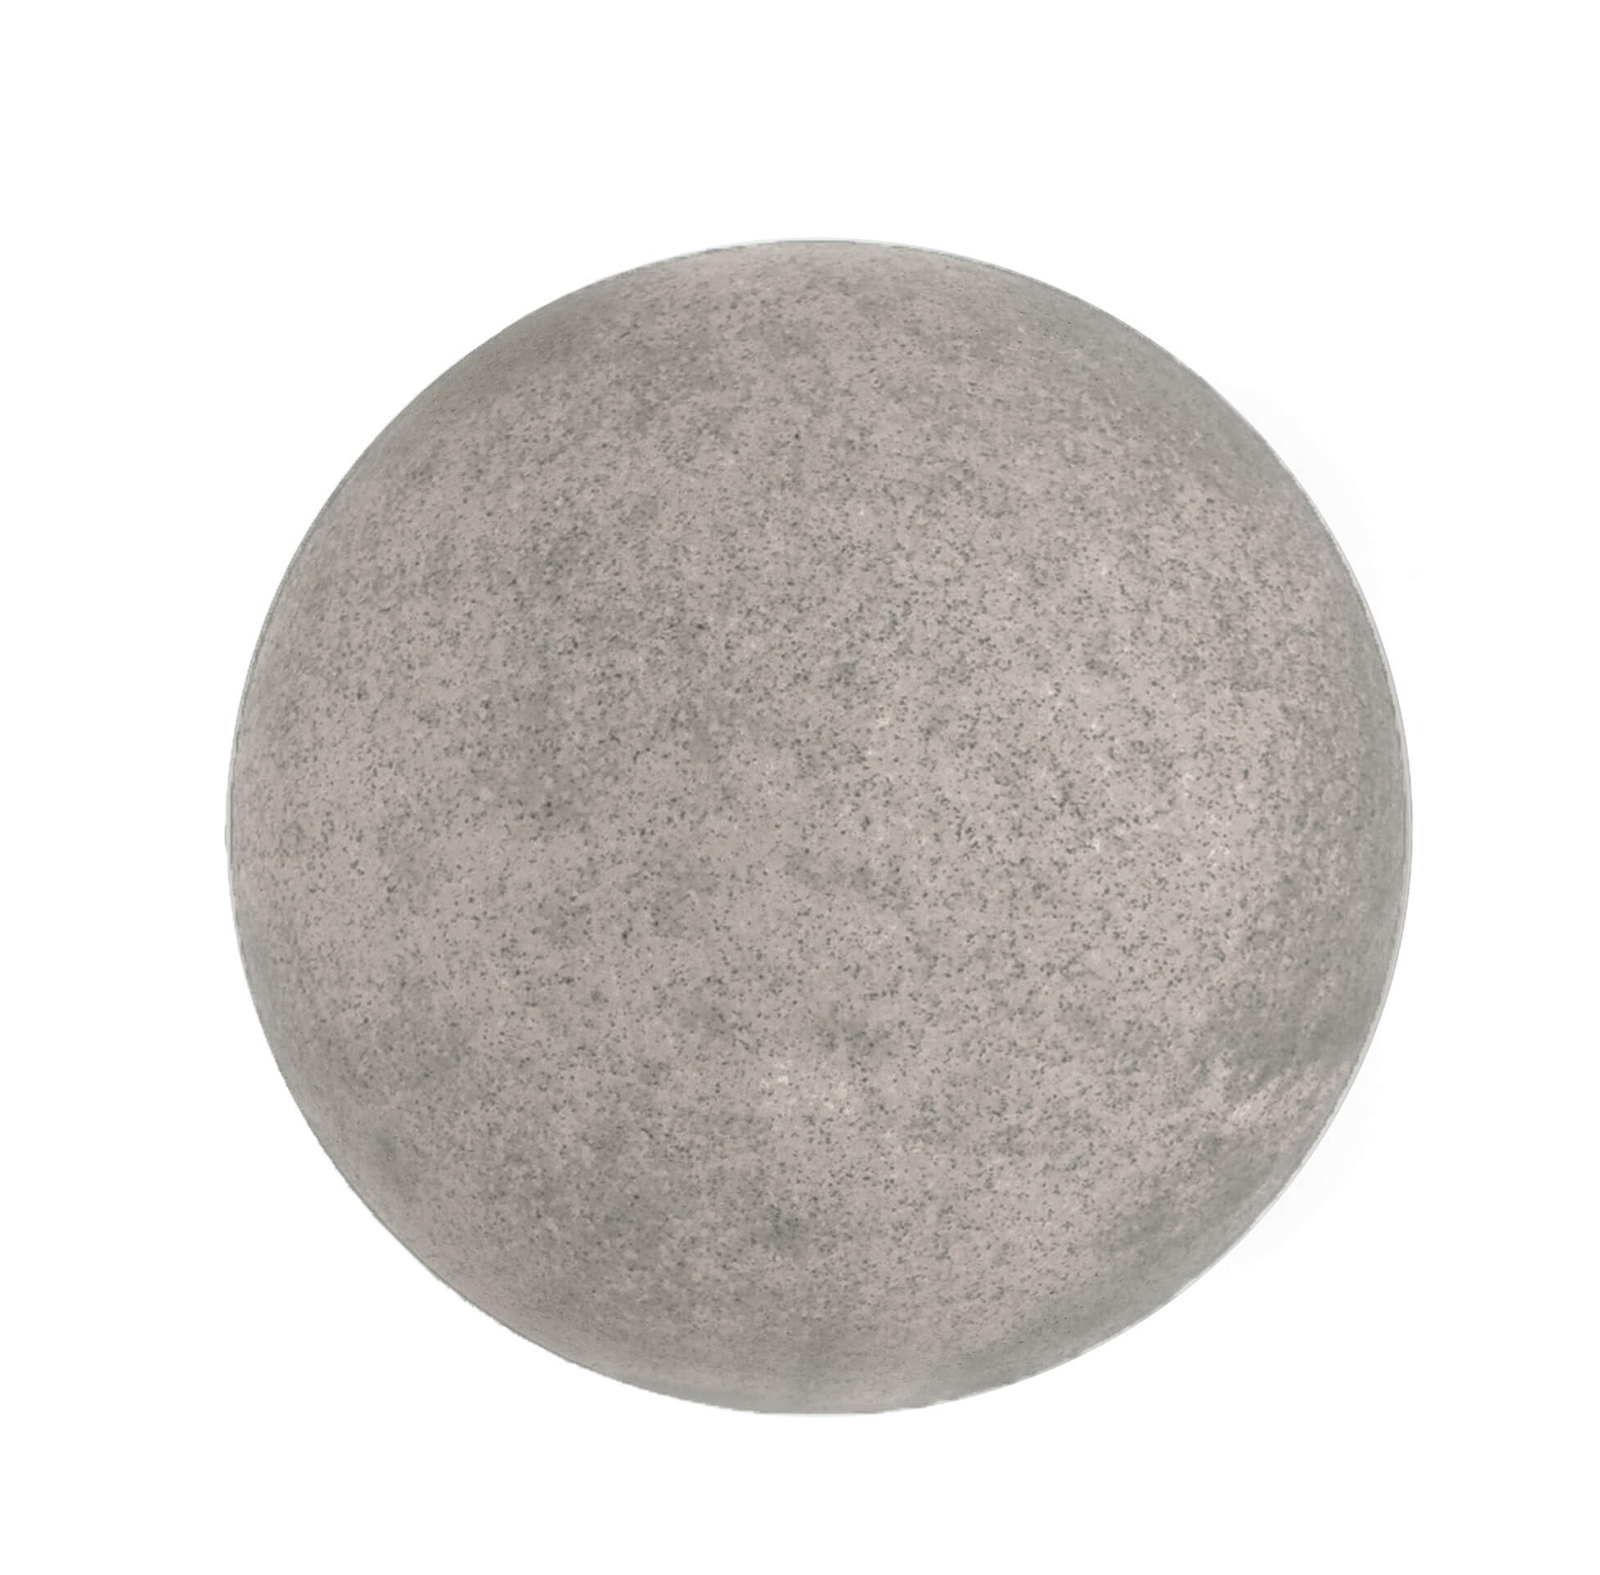 Lâmpada de globo para exterior com espigão, granito, Ø 25cm